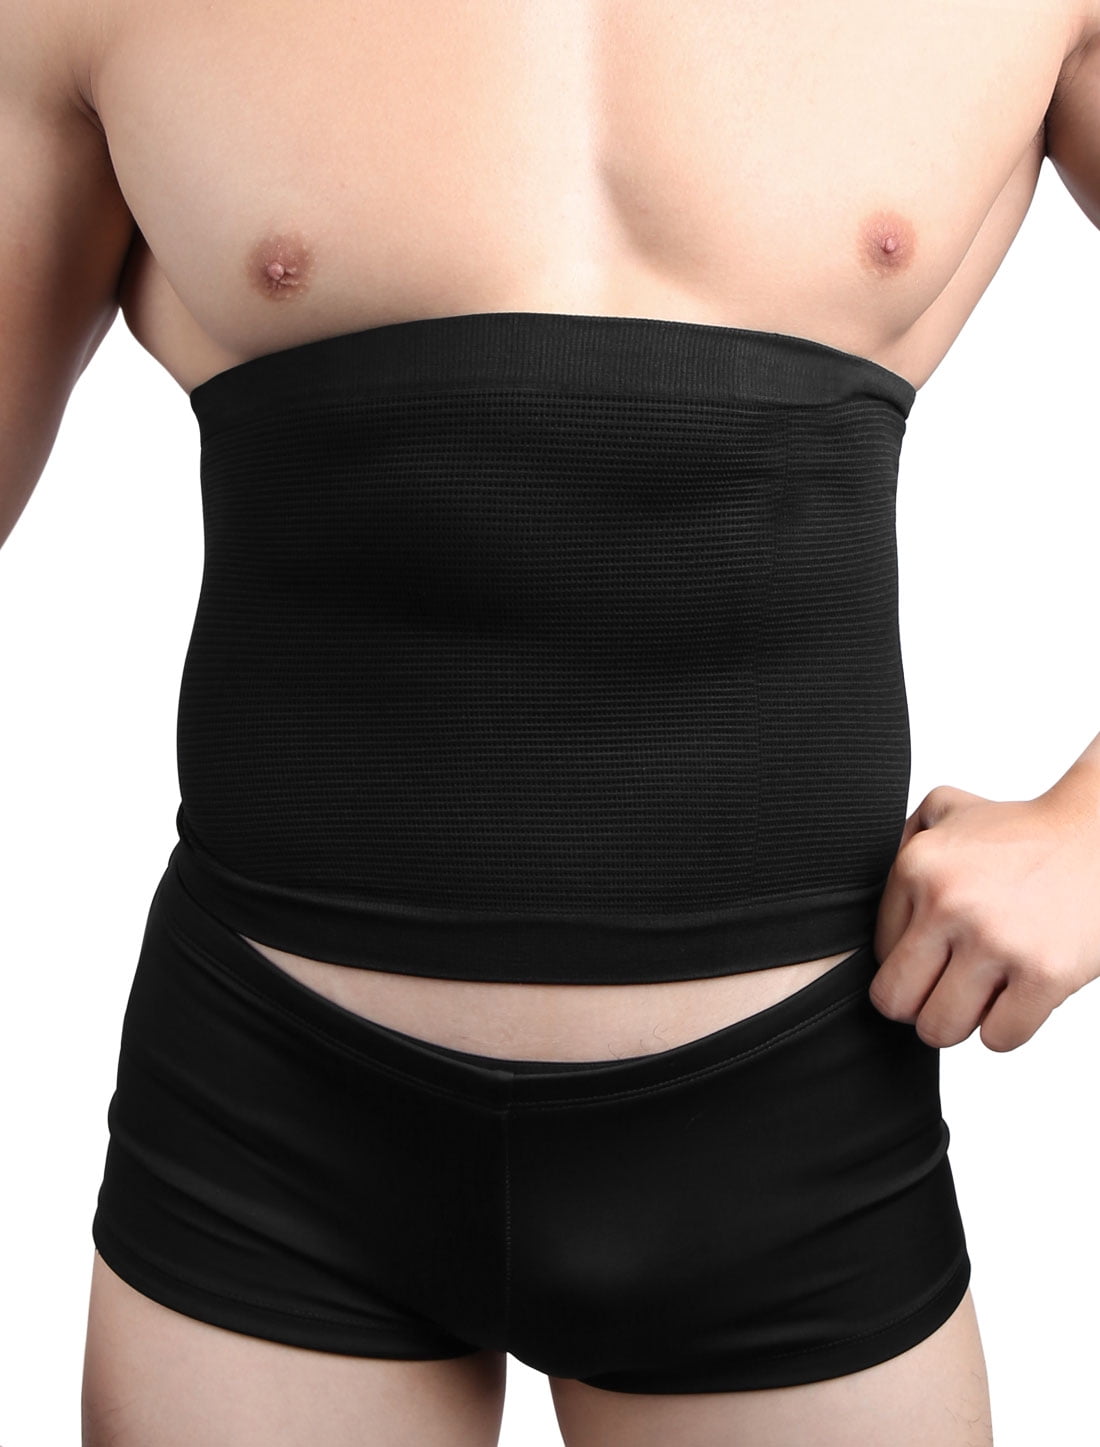 M Men Underclothes Slimming Waist Trimmer Belt Abdomen Tummy Belly Girdle  Body Shaper 